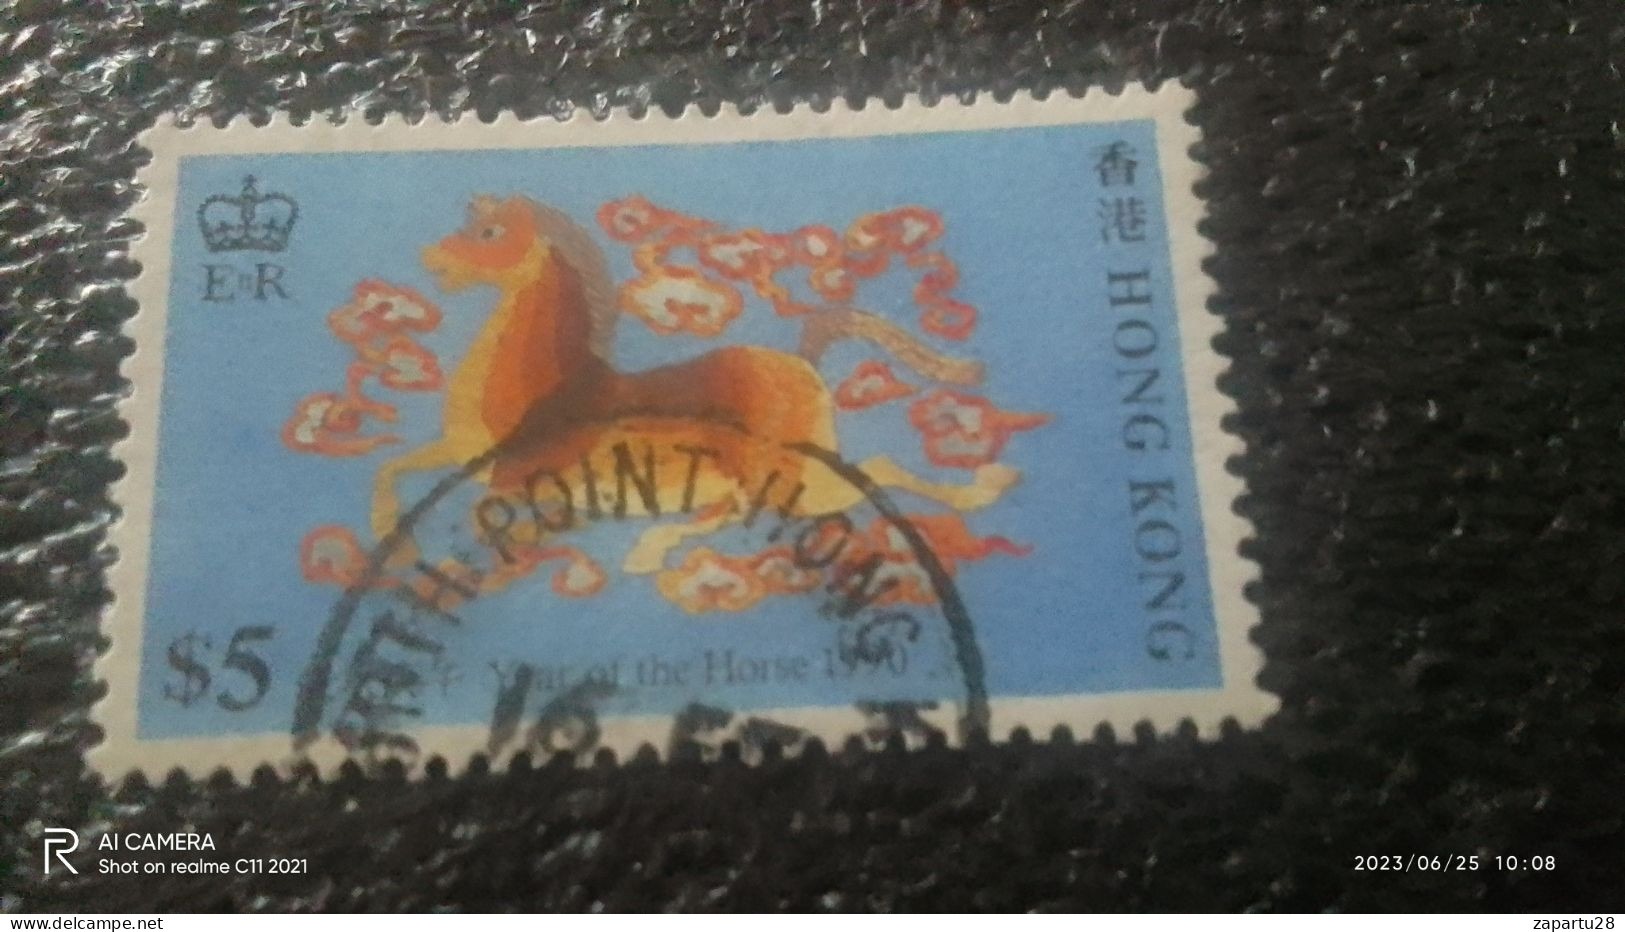 HONG KONG-1990-00-              5$        USED - Gebraucht